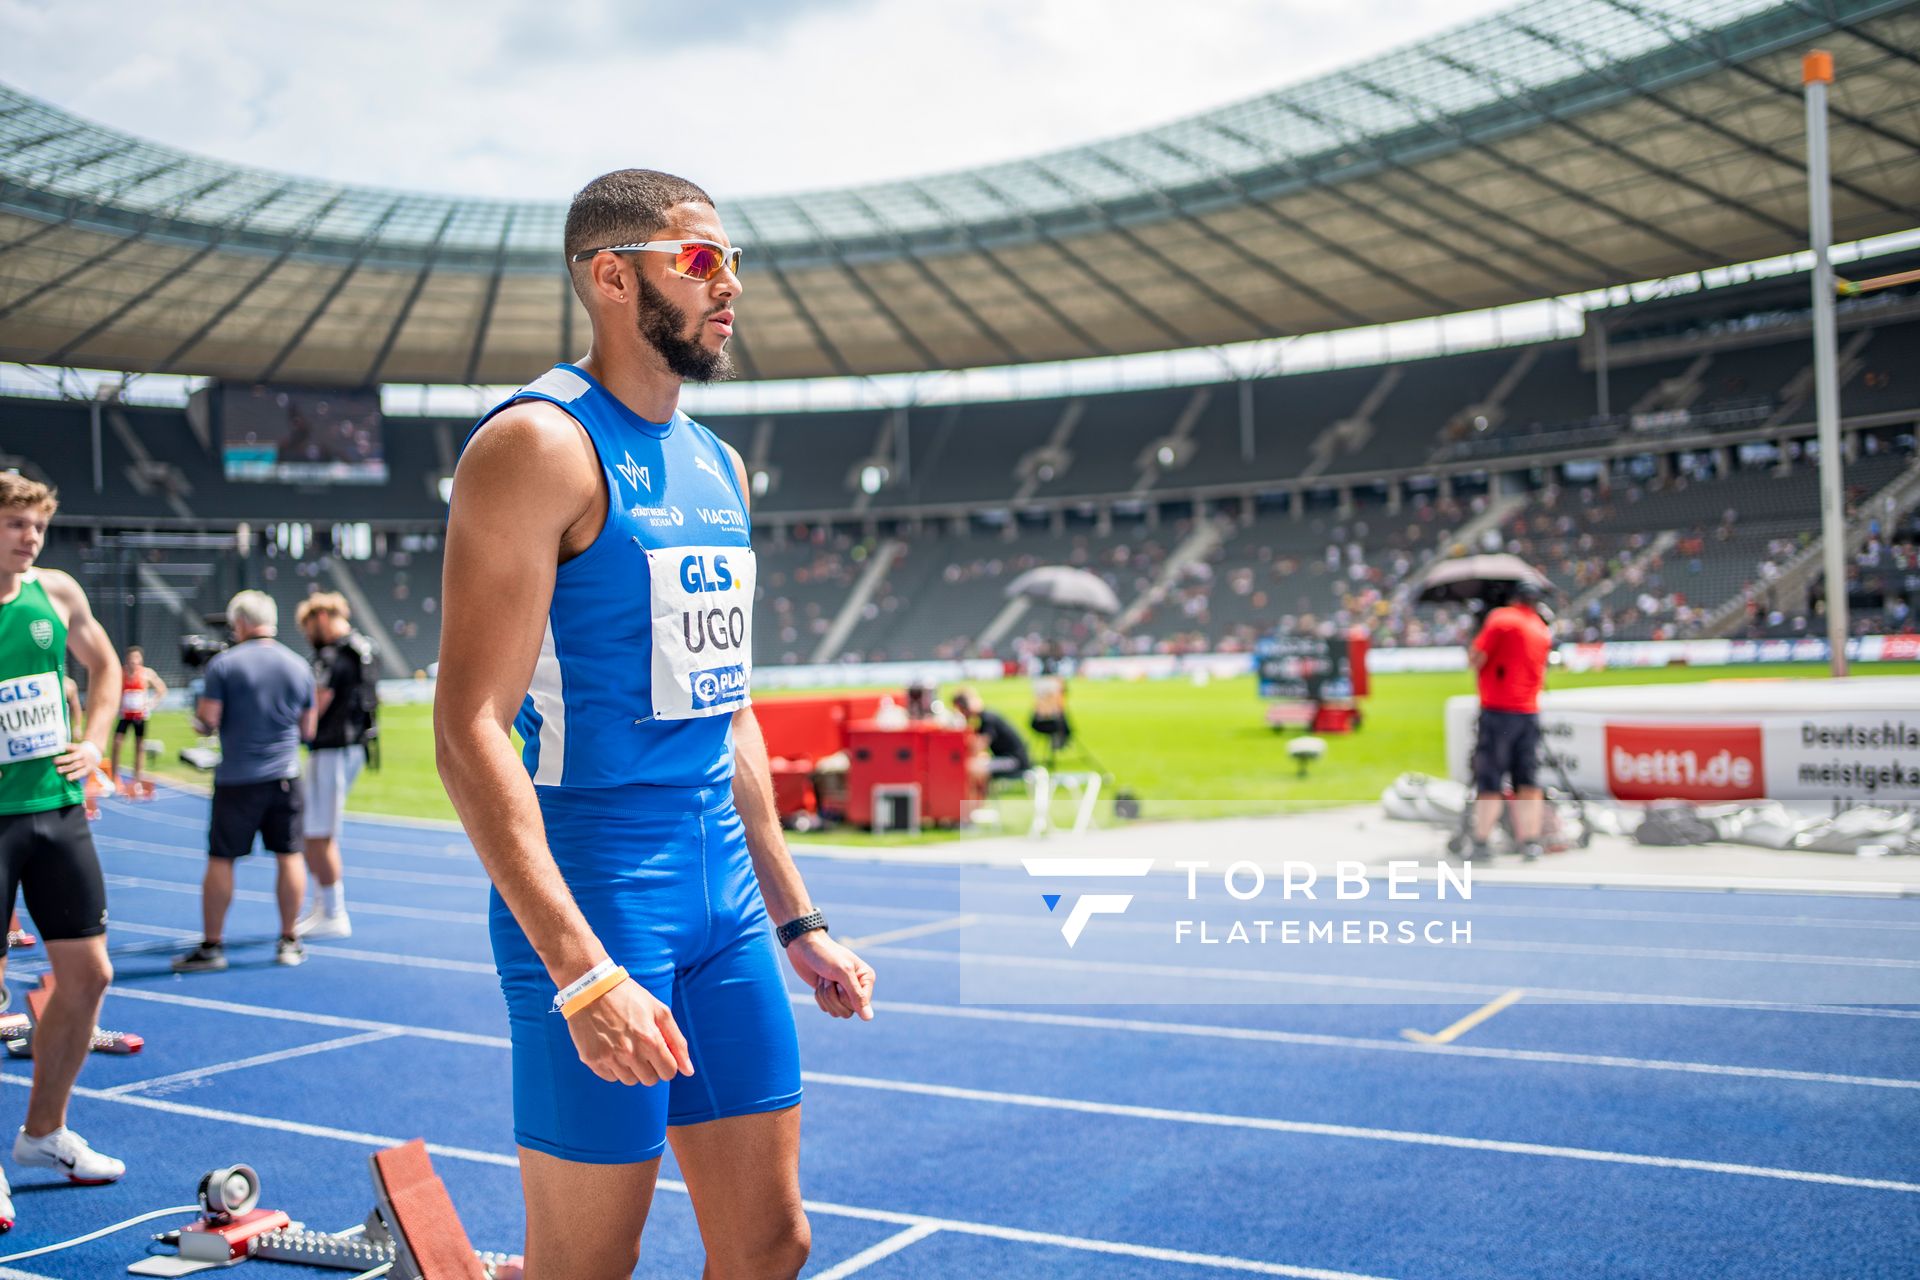 Kevin Ugo (TV Wattenscheid 01) ueber 200m waehrend der deutschen Leichtathletik-Meisterschaften im Olympiastadion am 26.06.2022 in Berlin